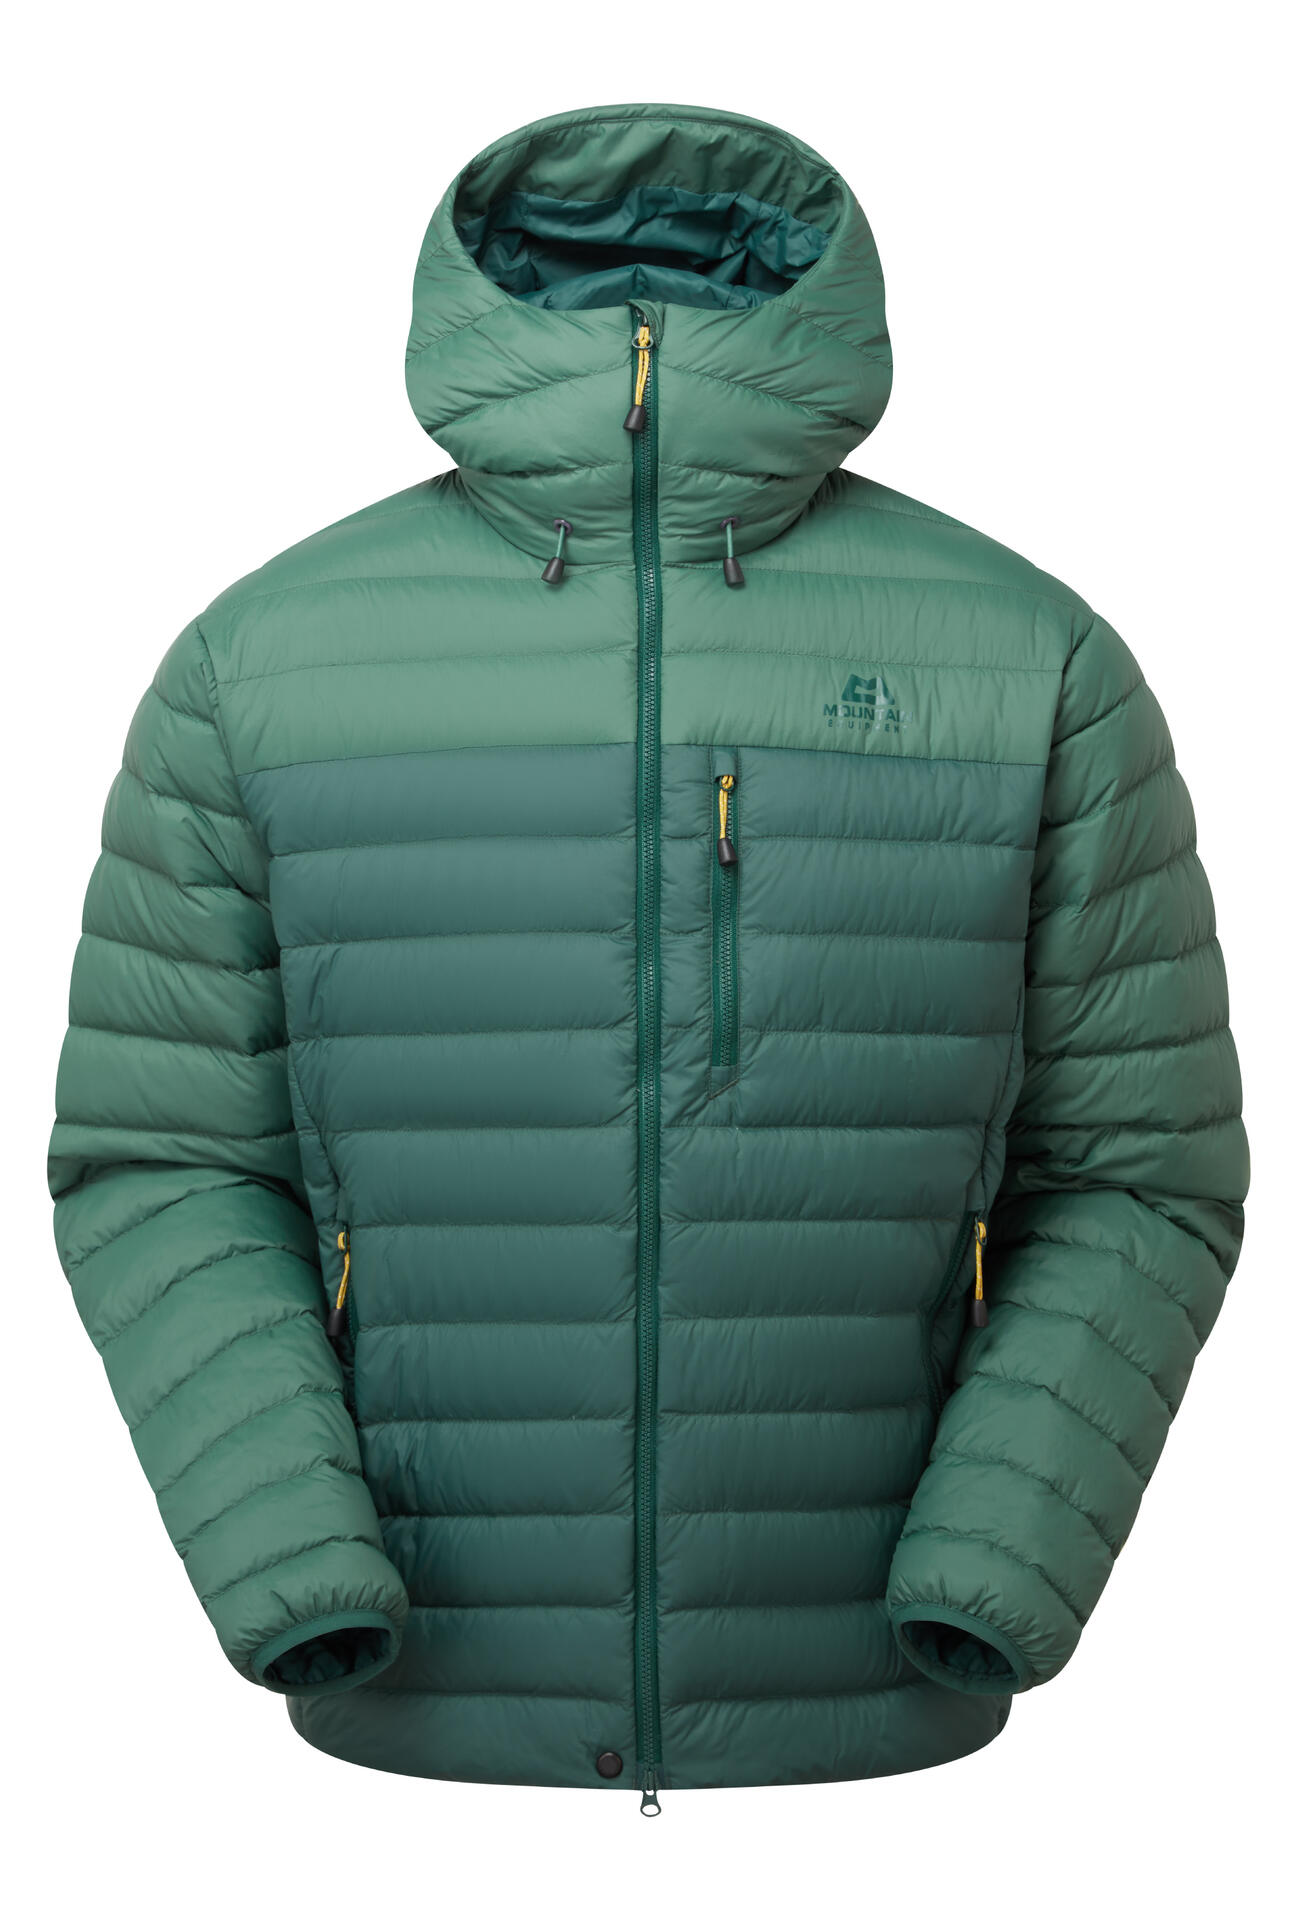 Mountain Equipment Earthrise Hooded Jacket Men'S Barva: Pine/Fern, Velikost: XL